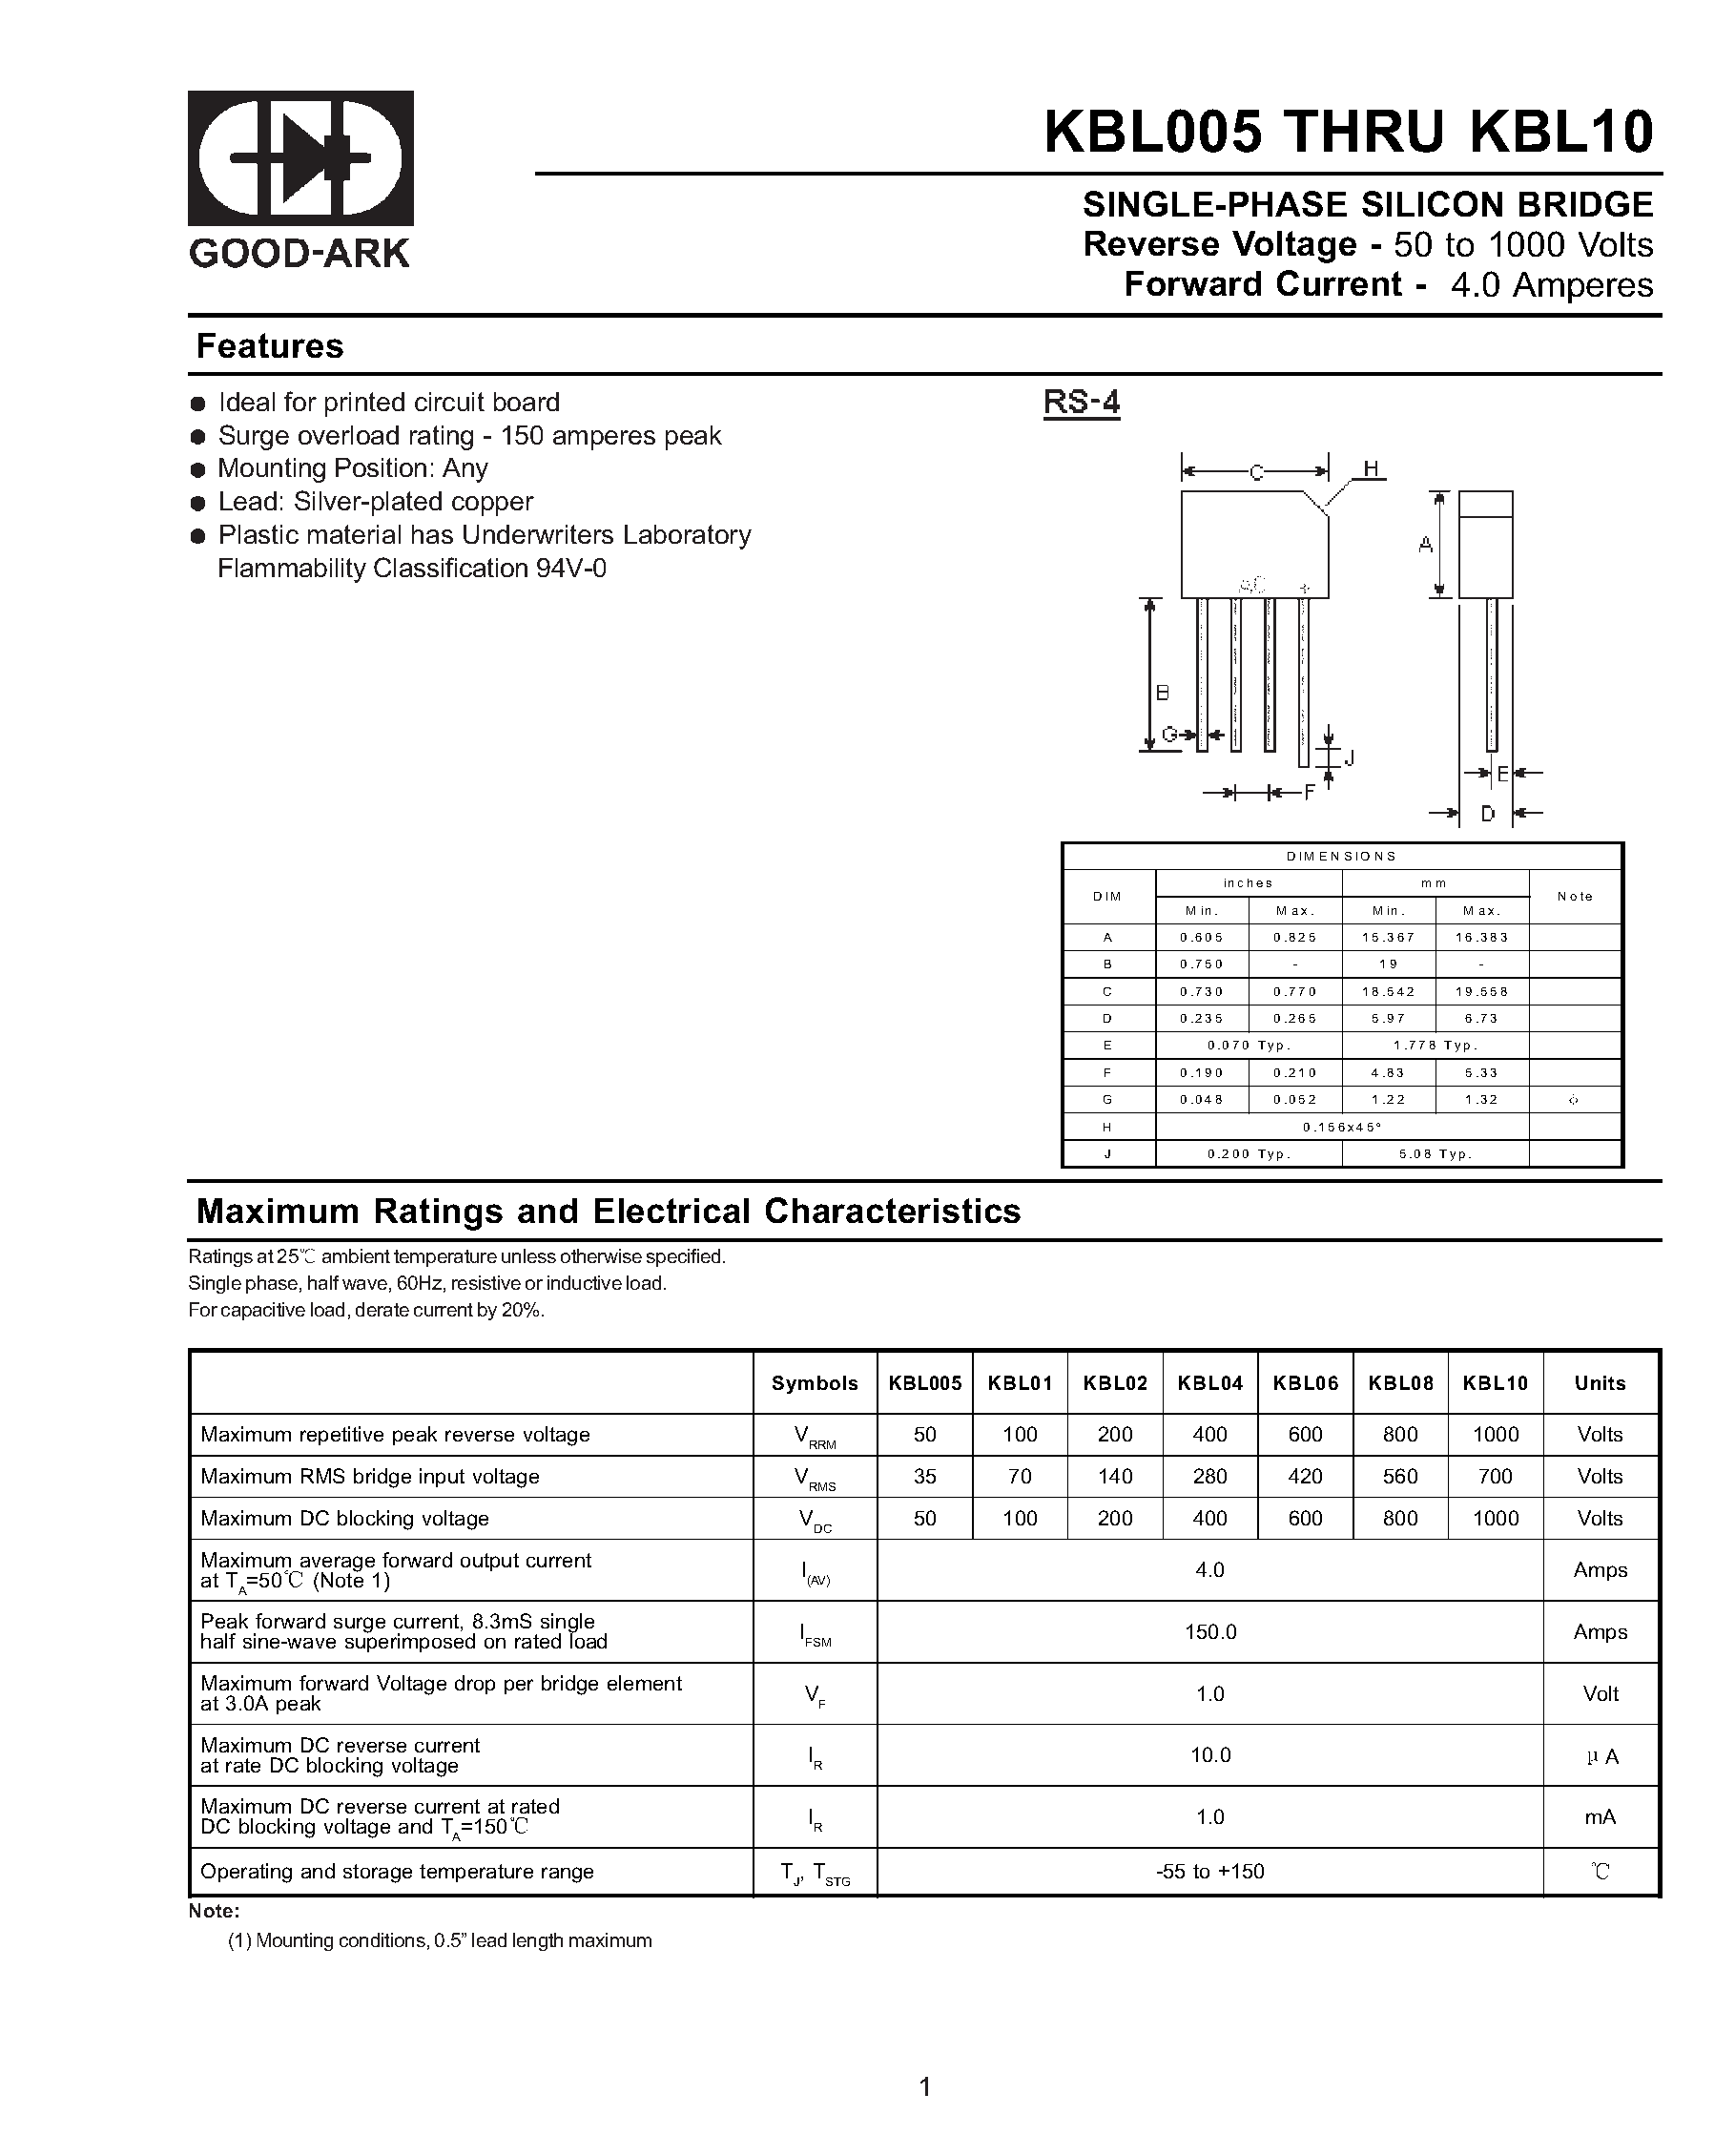 Datasheet KBL02 - SINGLE-PHASE SILICON BRIDGE page 1